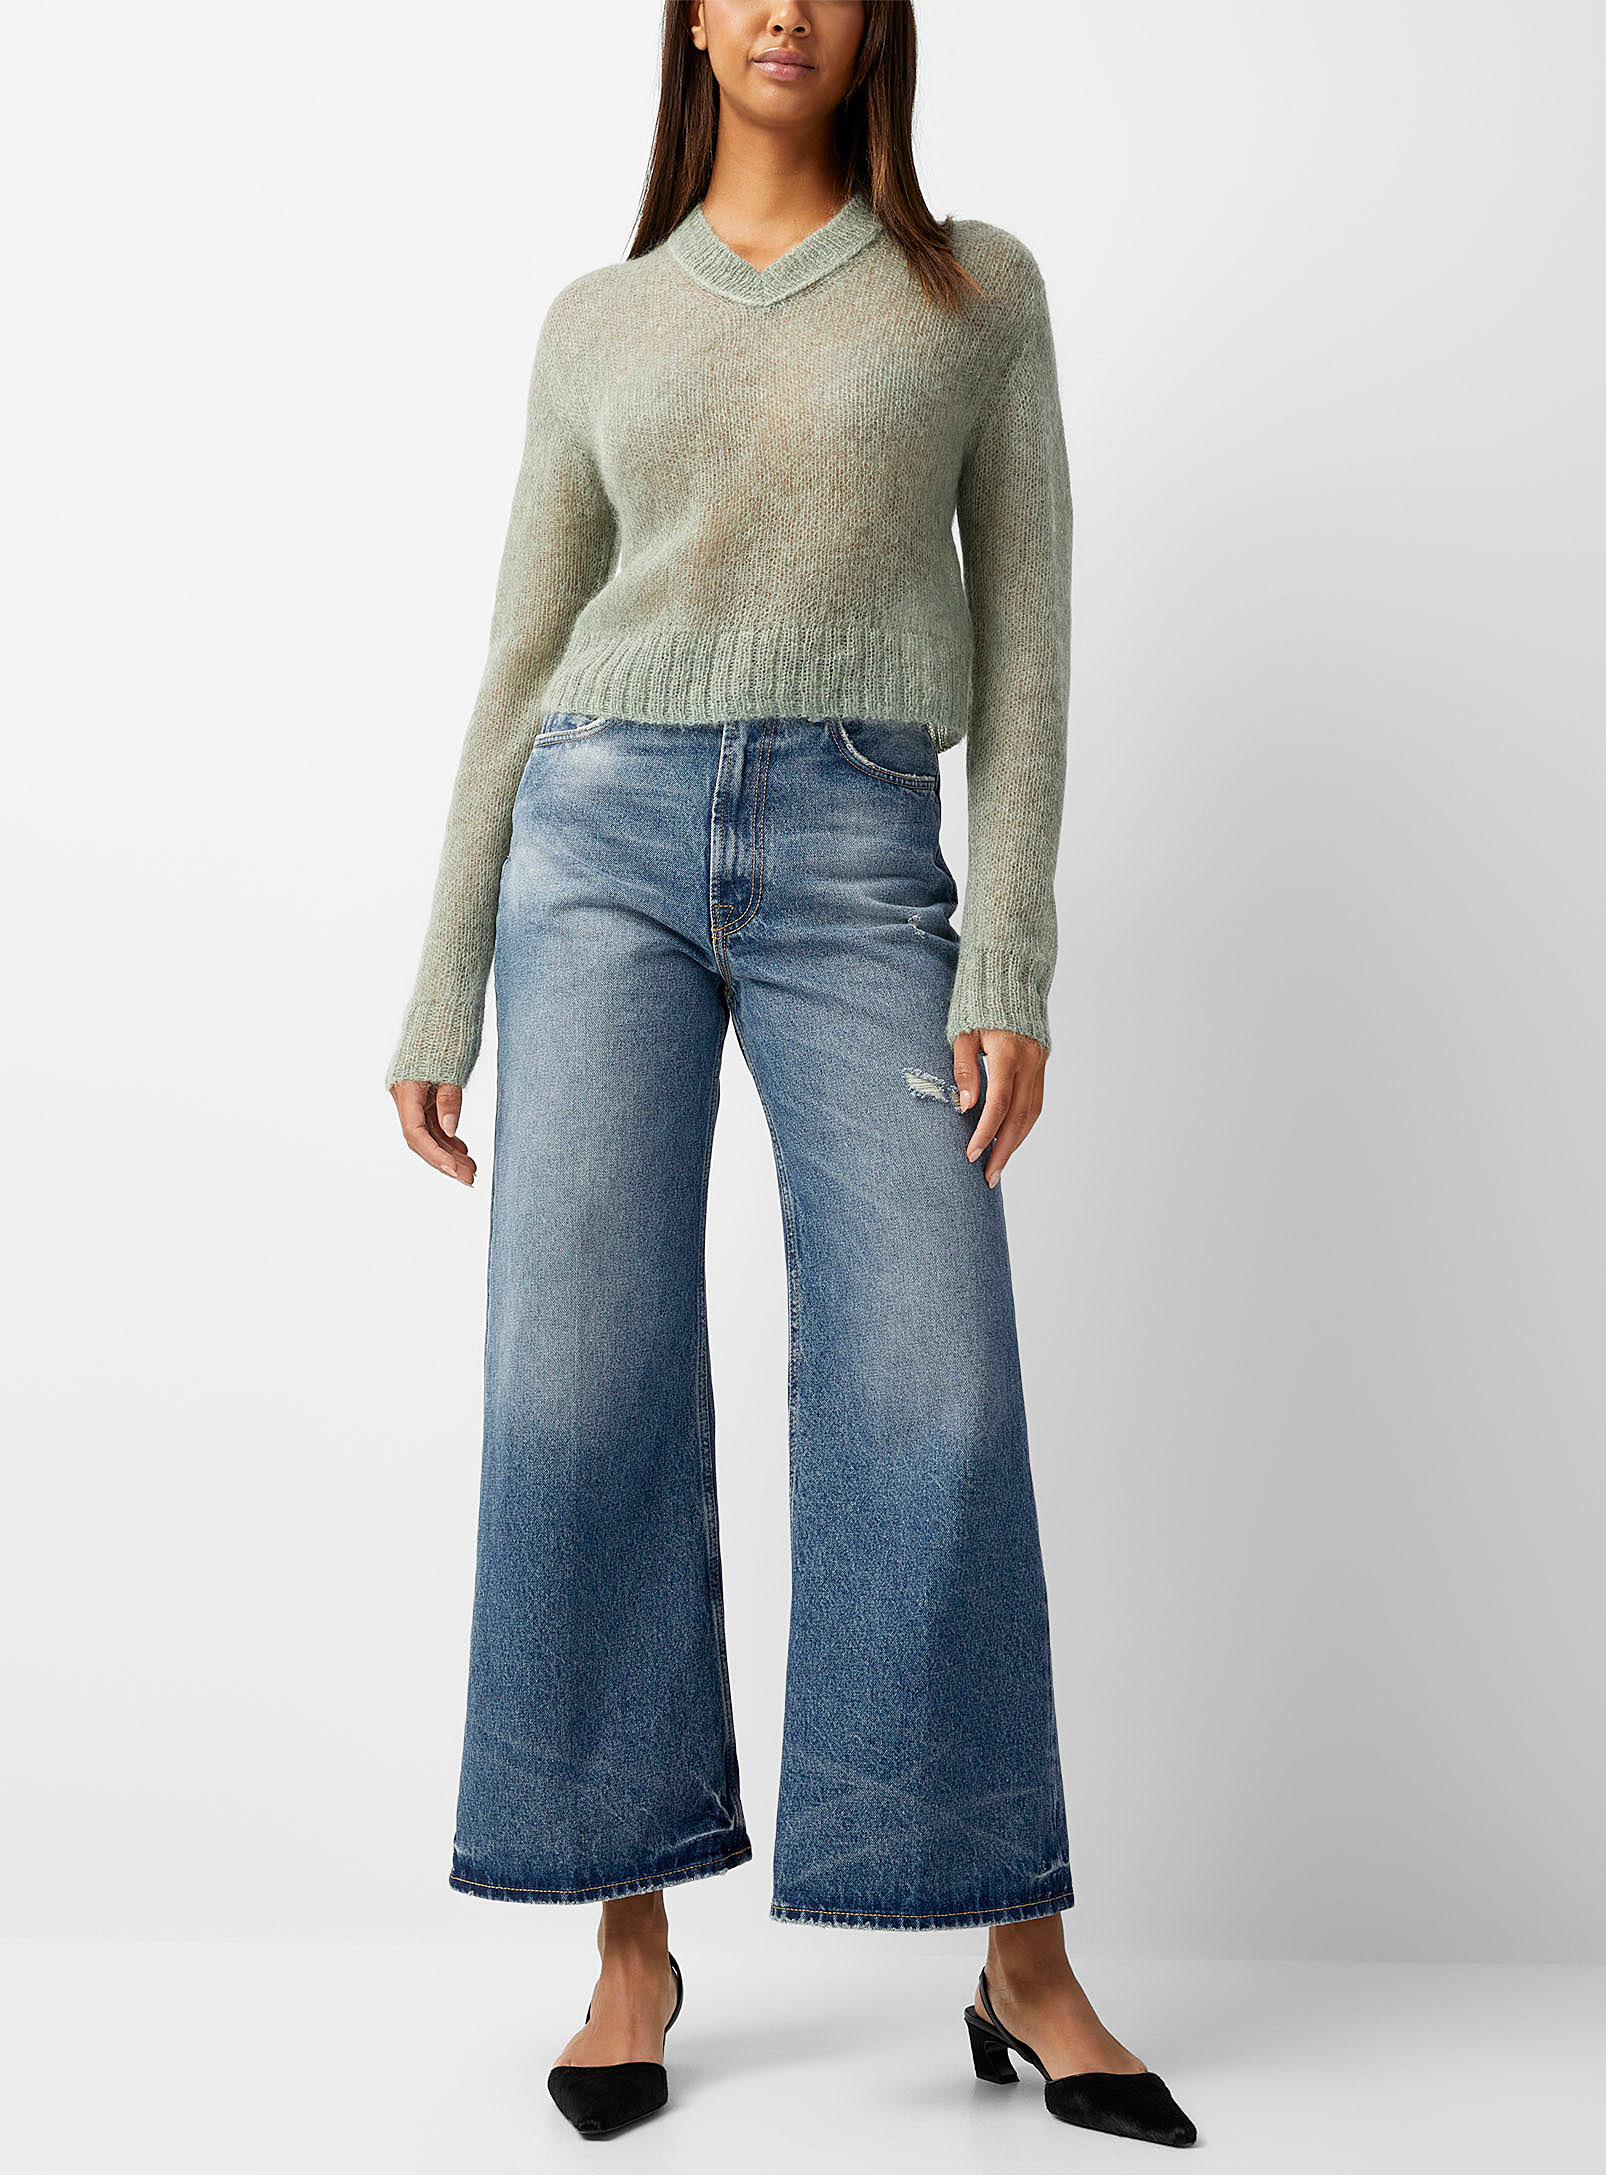 Acne Studios - Le jean bleu ample accents usés